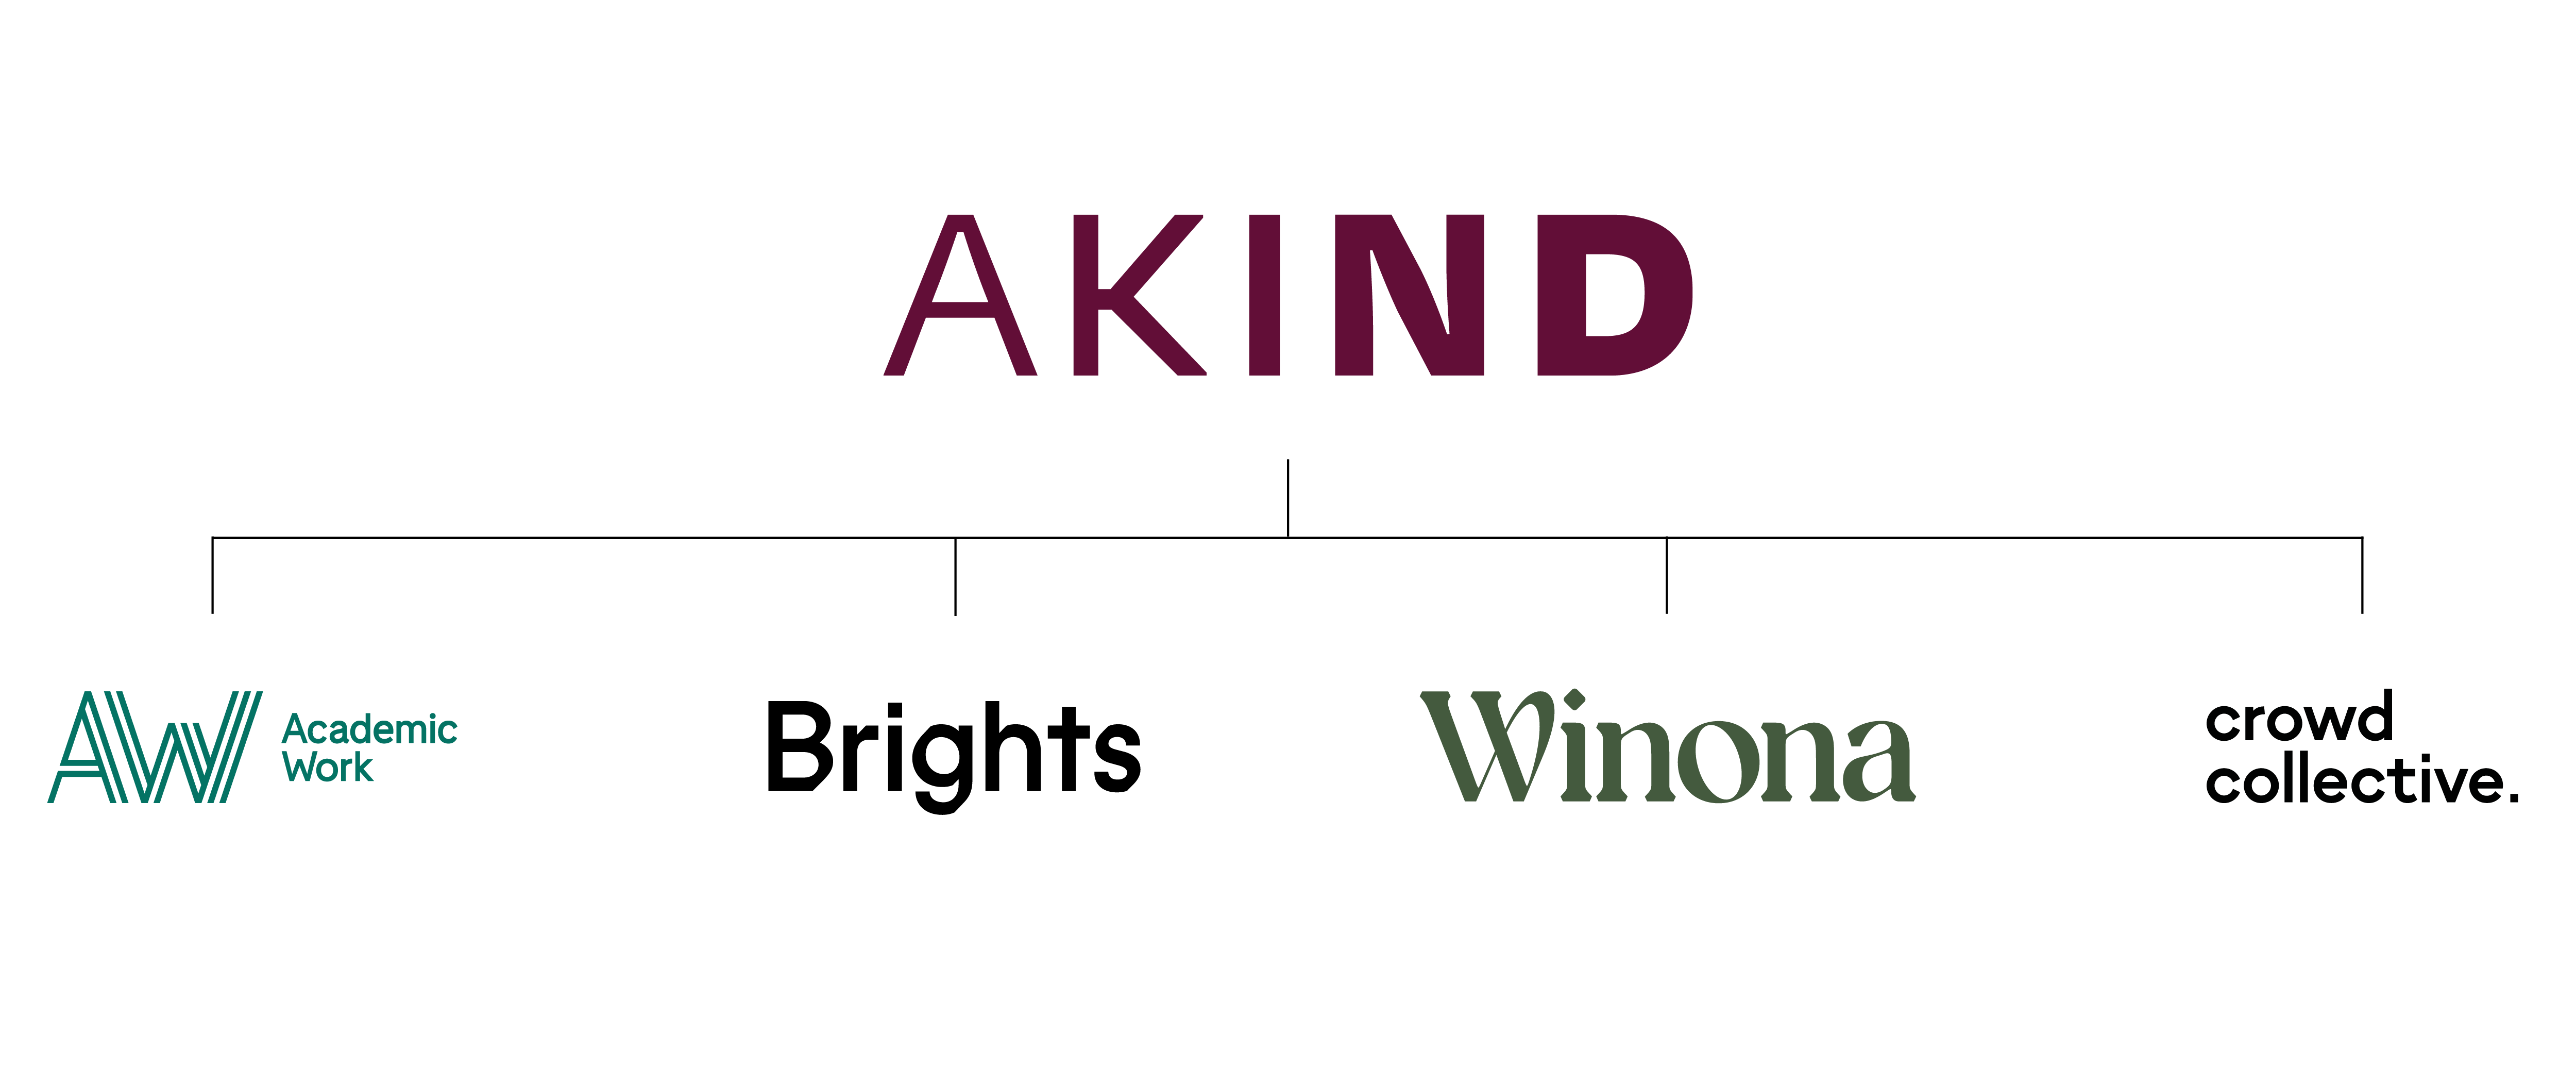 Akind Org Chart